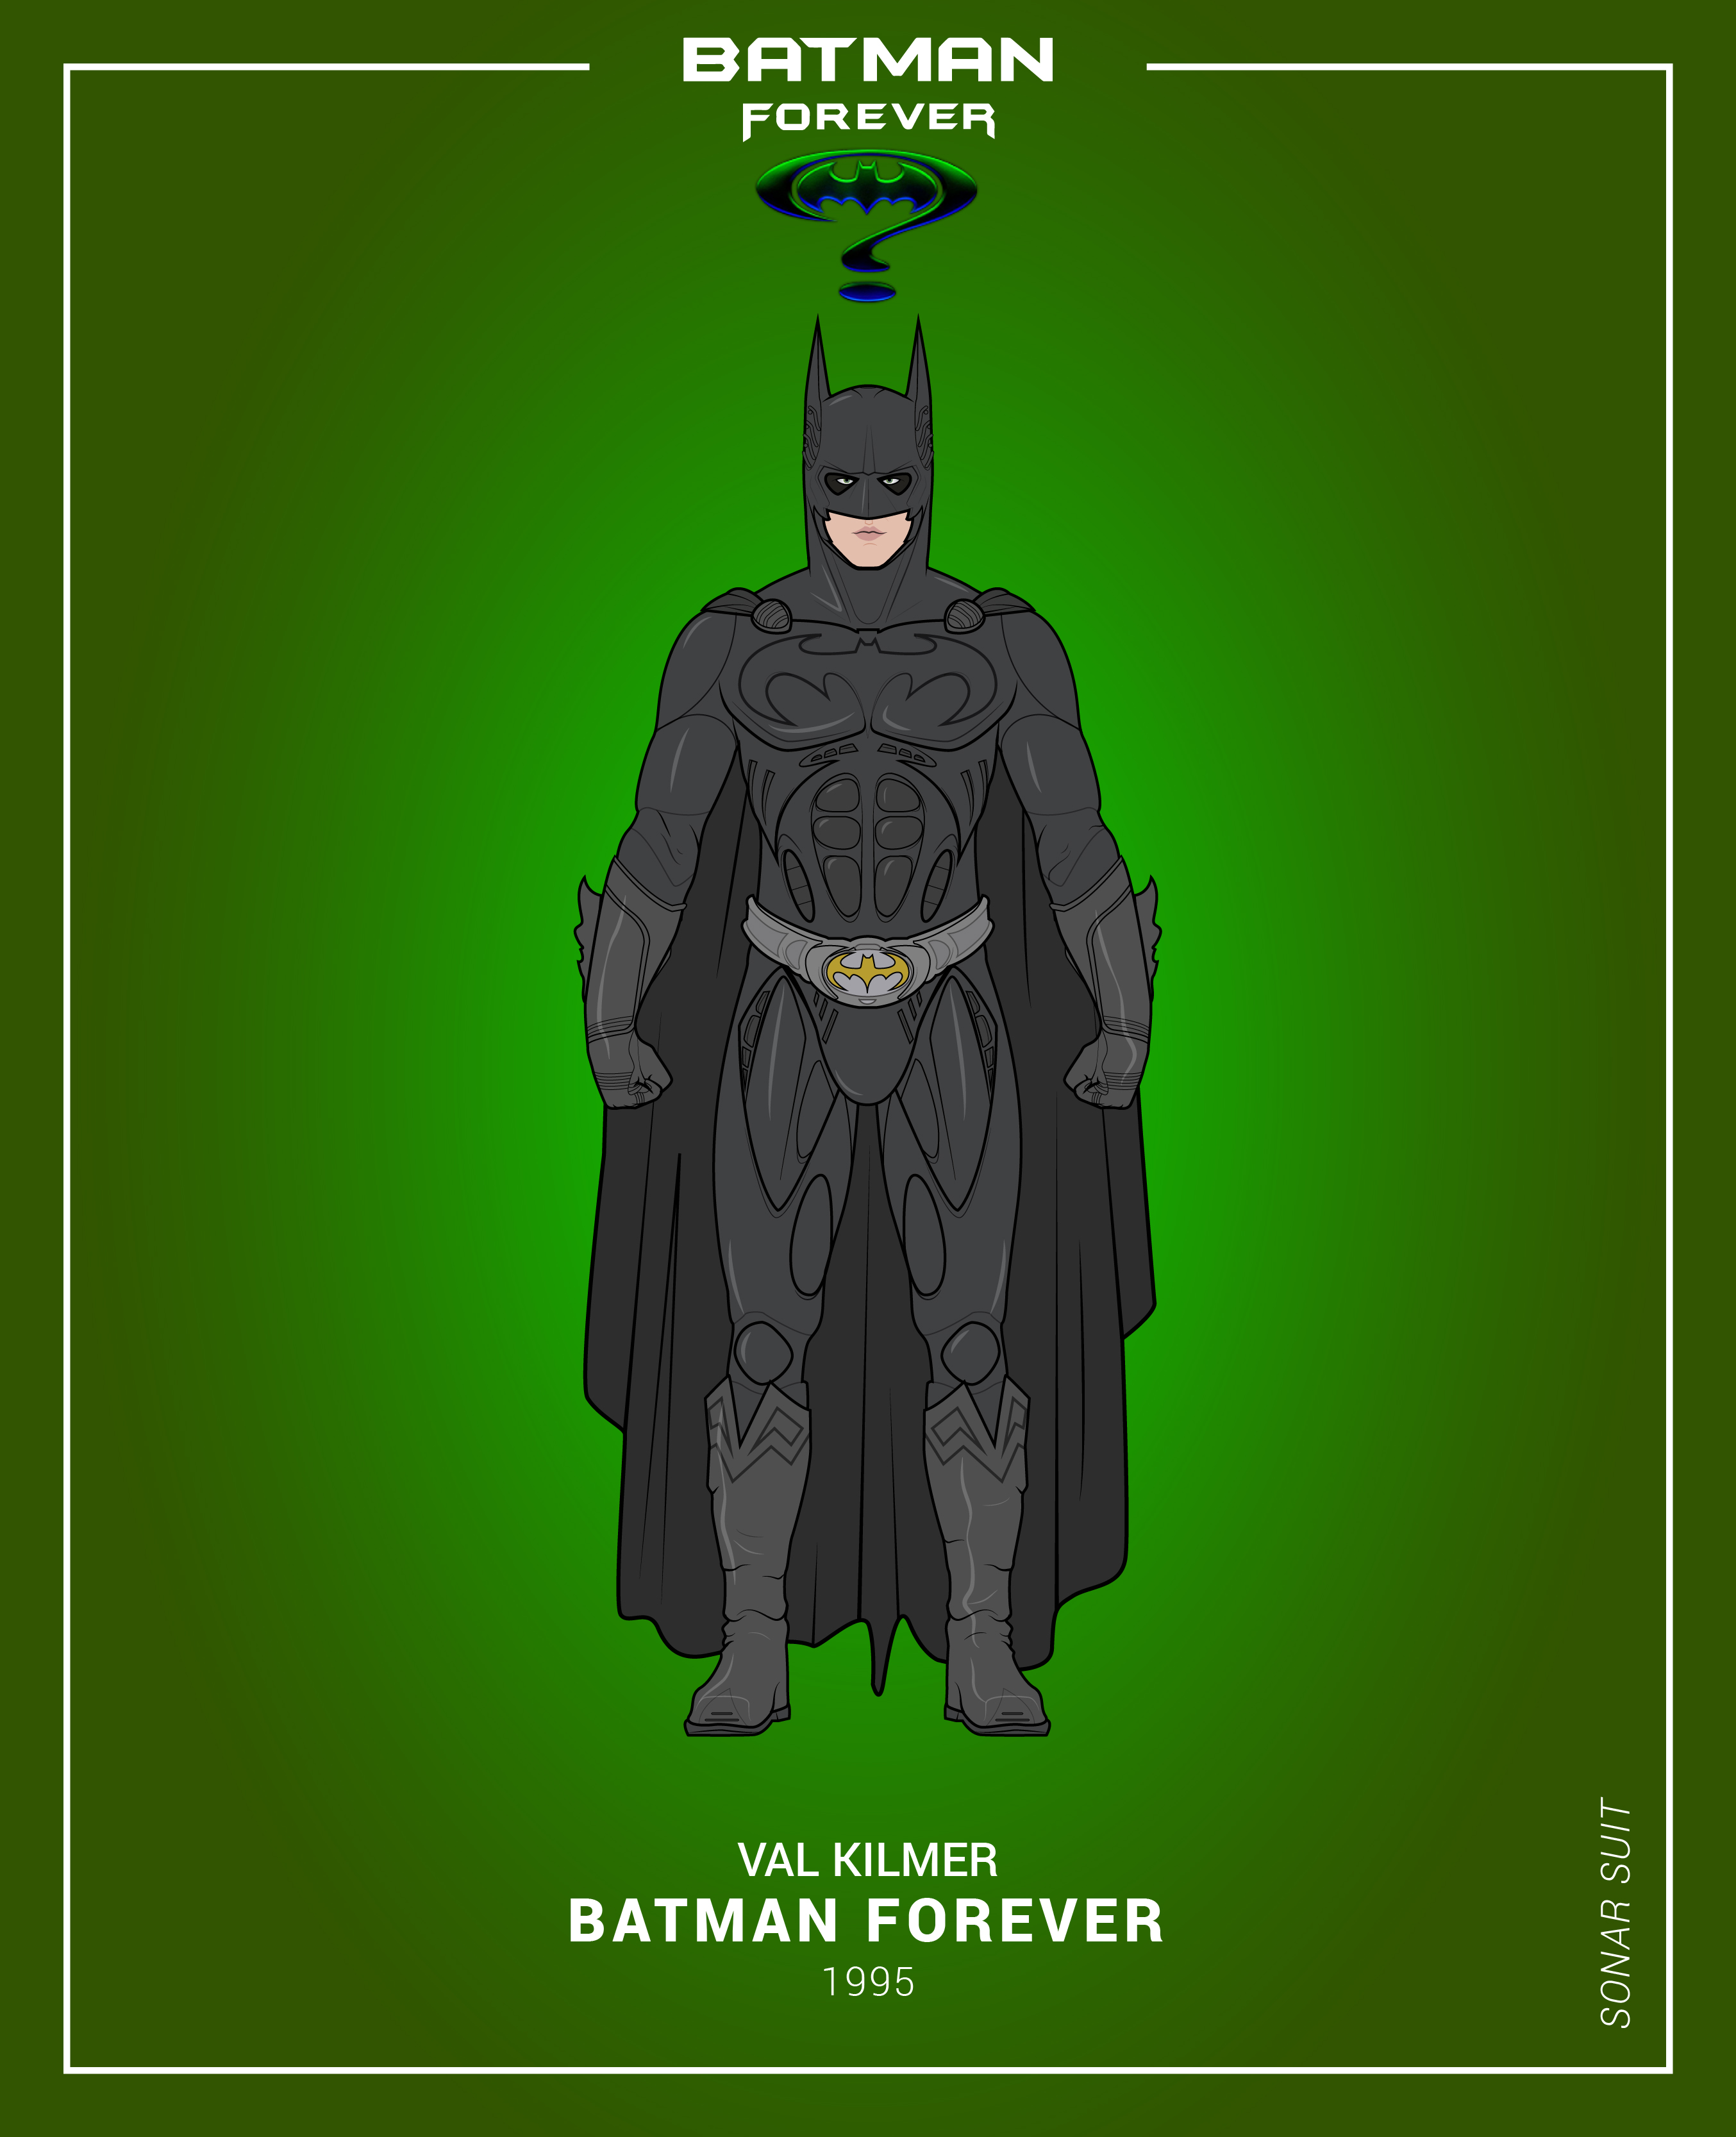 Batman Forever [Sonar Suit] (1995) by efrajoey1 on DeviantArt